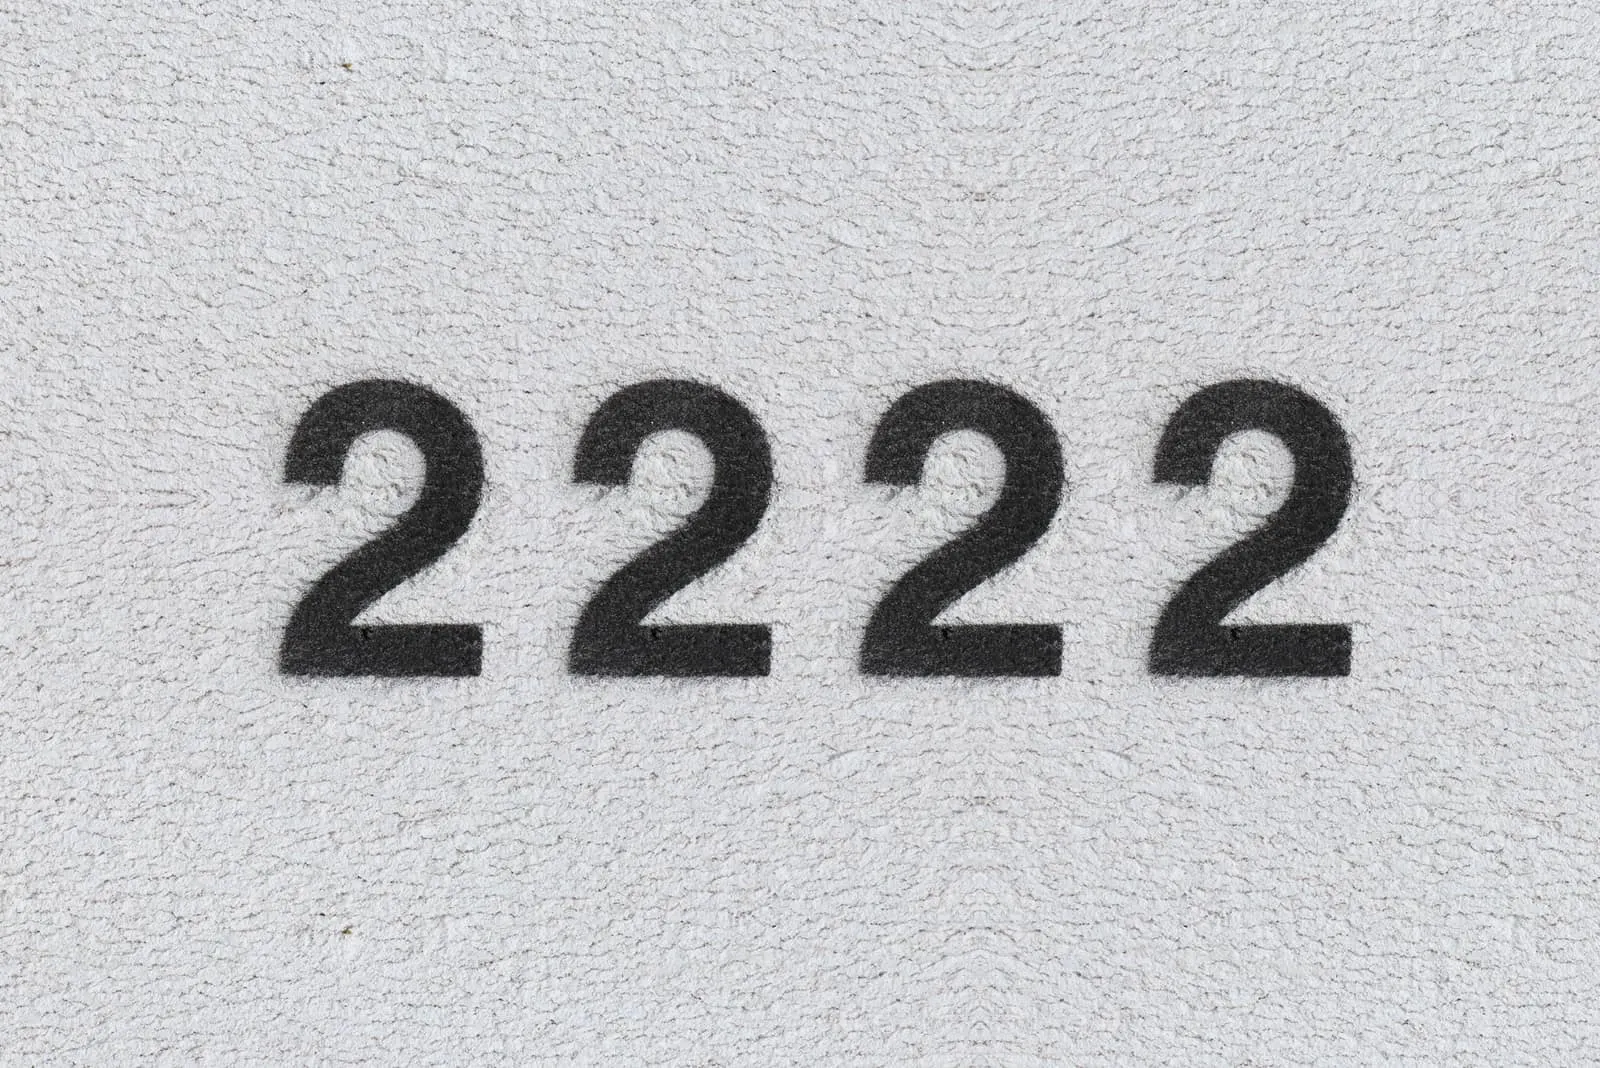 schwarze 2222-Nummer auf grauem Hintergrund